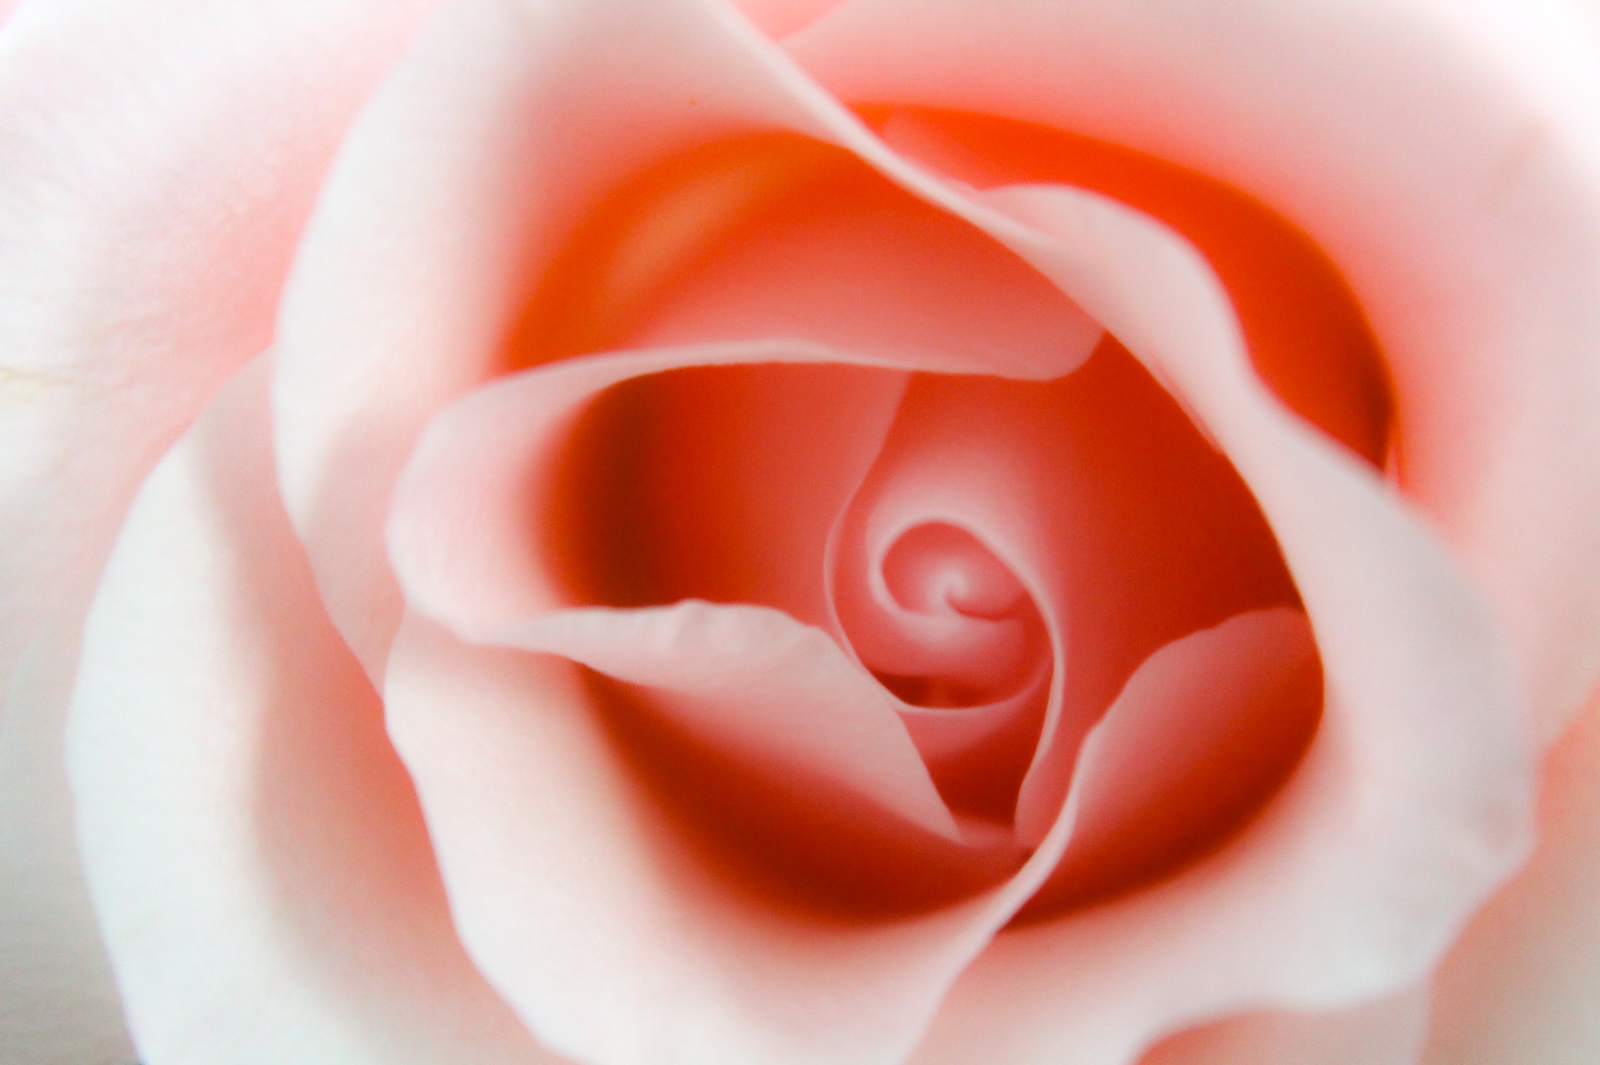 透明感のあるピンク色の薔薇 無料画像 フリー写真素材 Activephotostyle